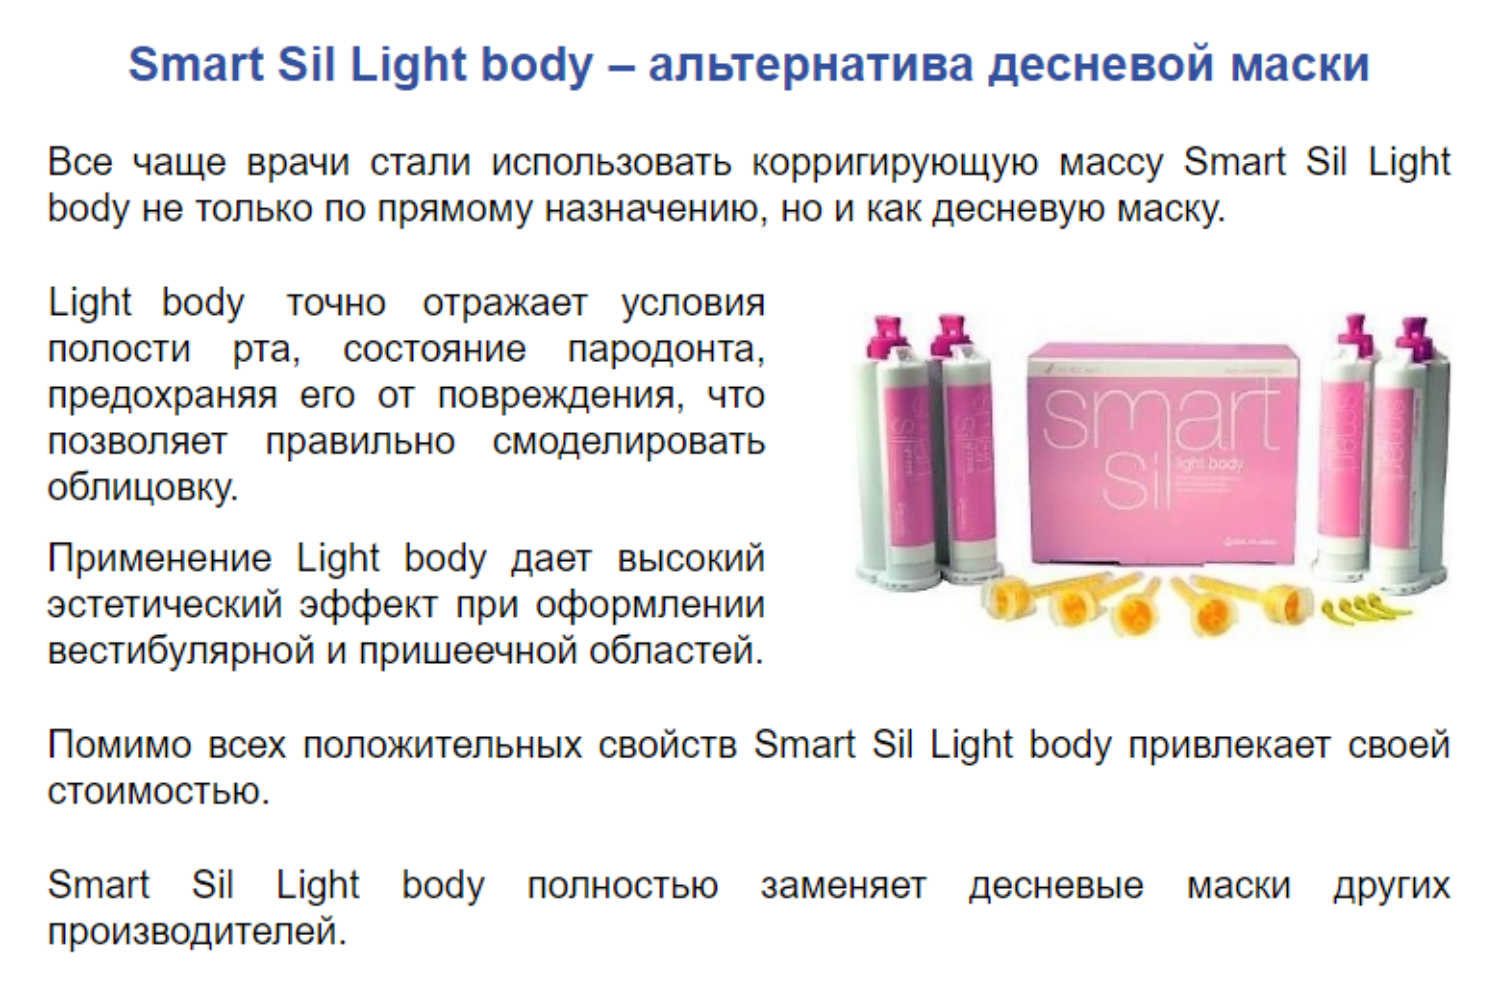 Smart Sil light body as gingival mask